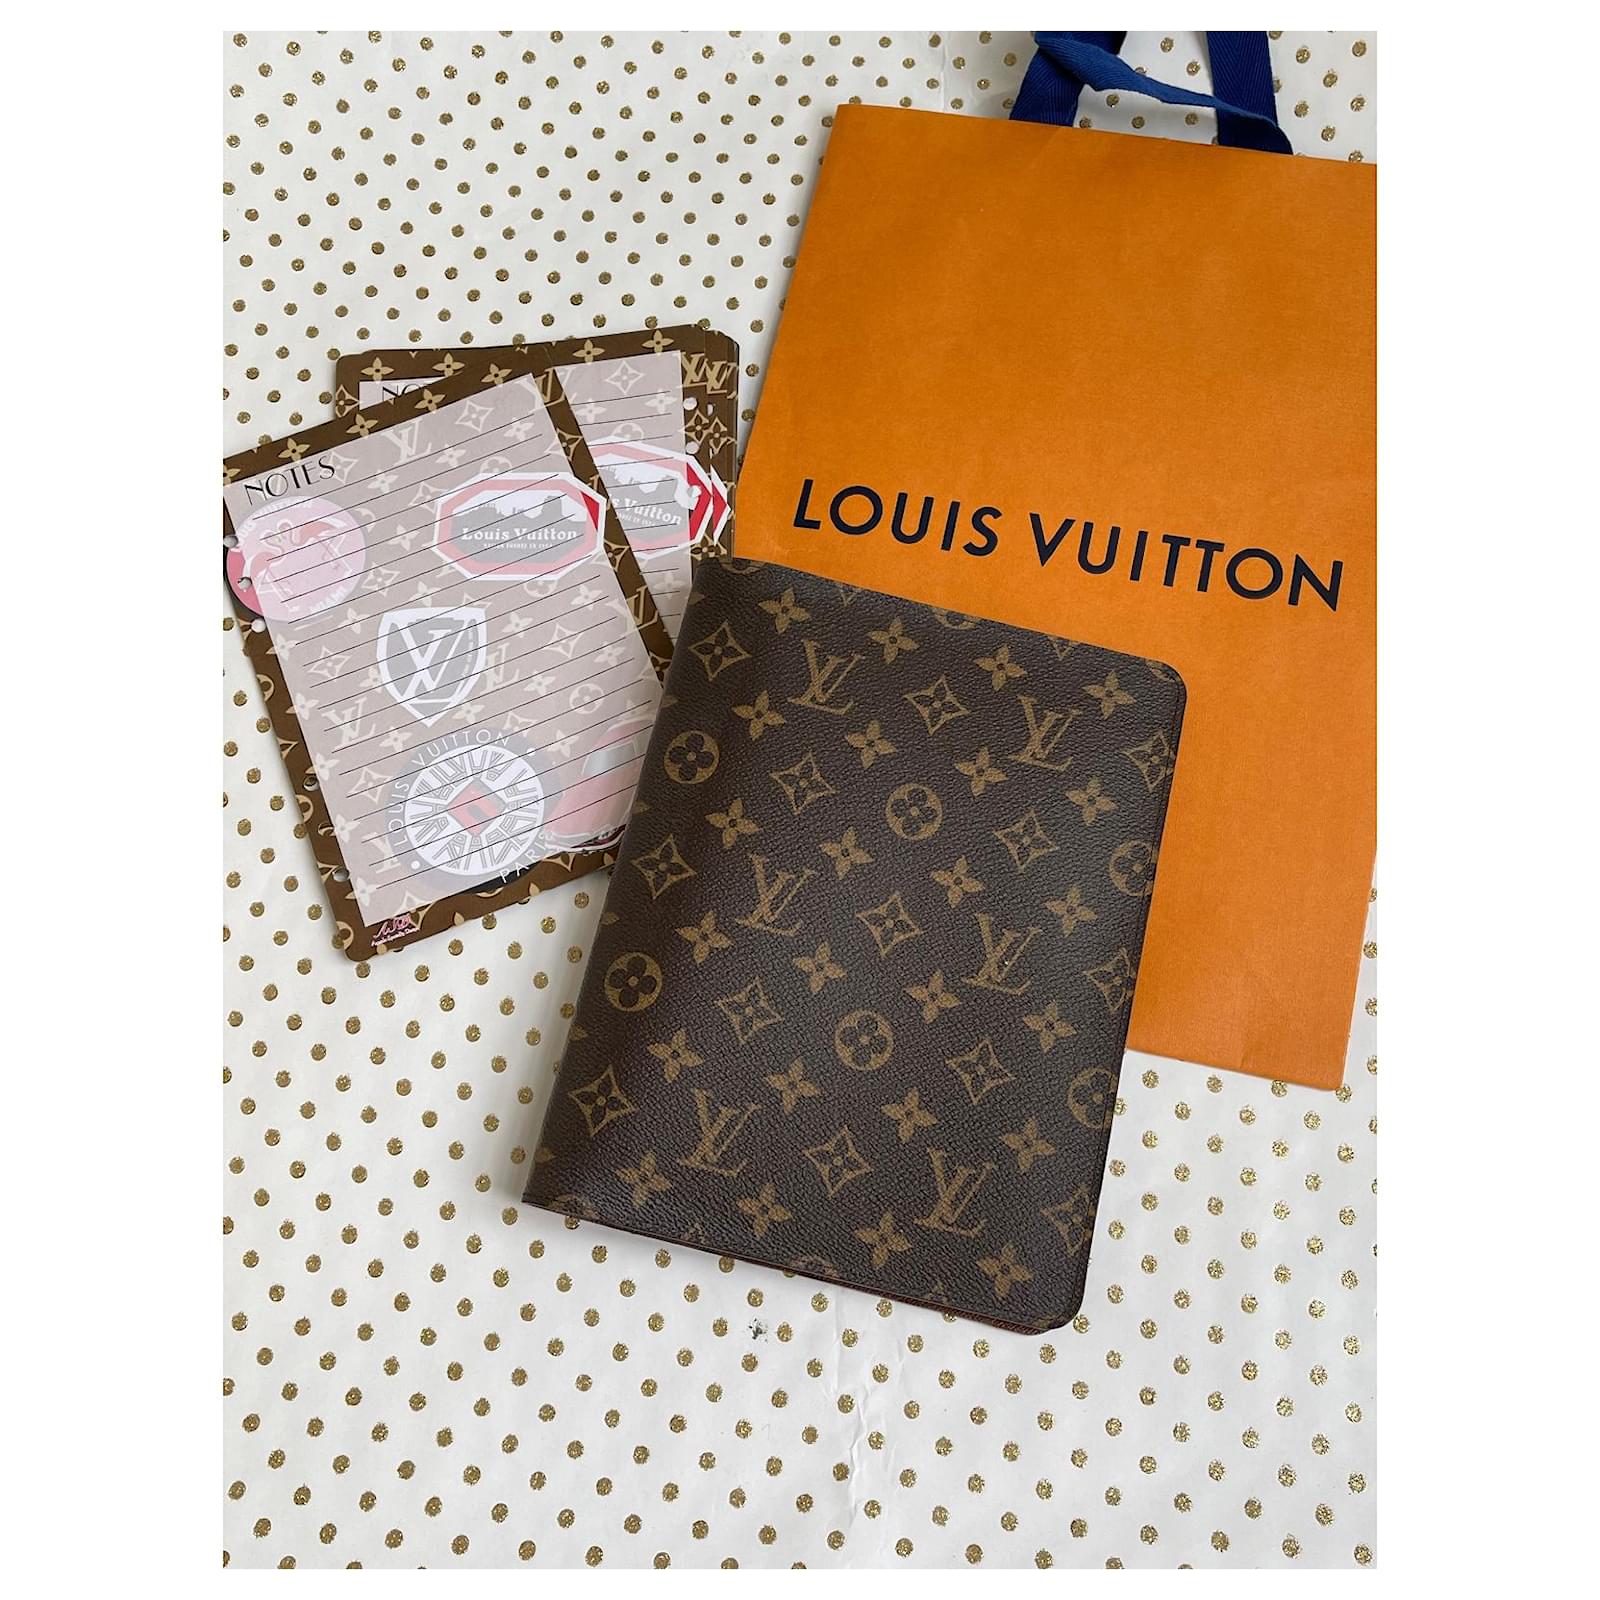 Shop Louis Vuitton MONOGRAM Desk Agenda Cover (R20100) by